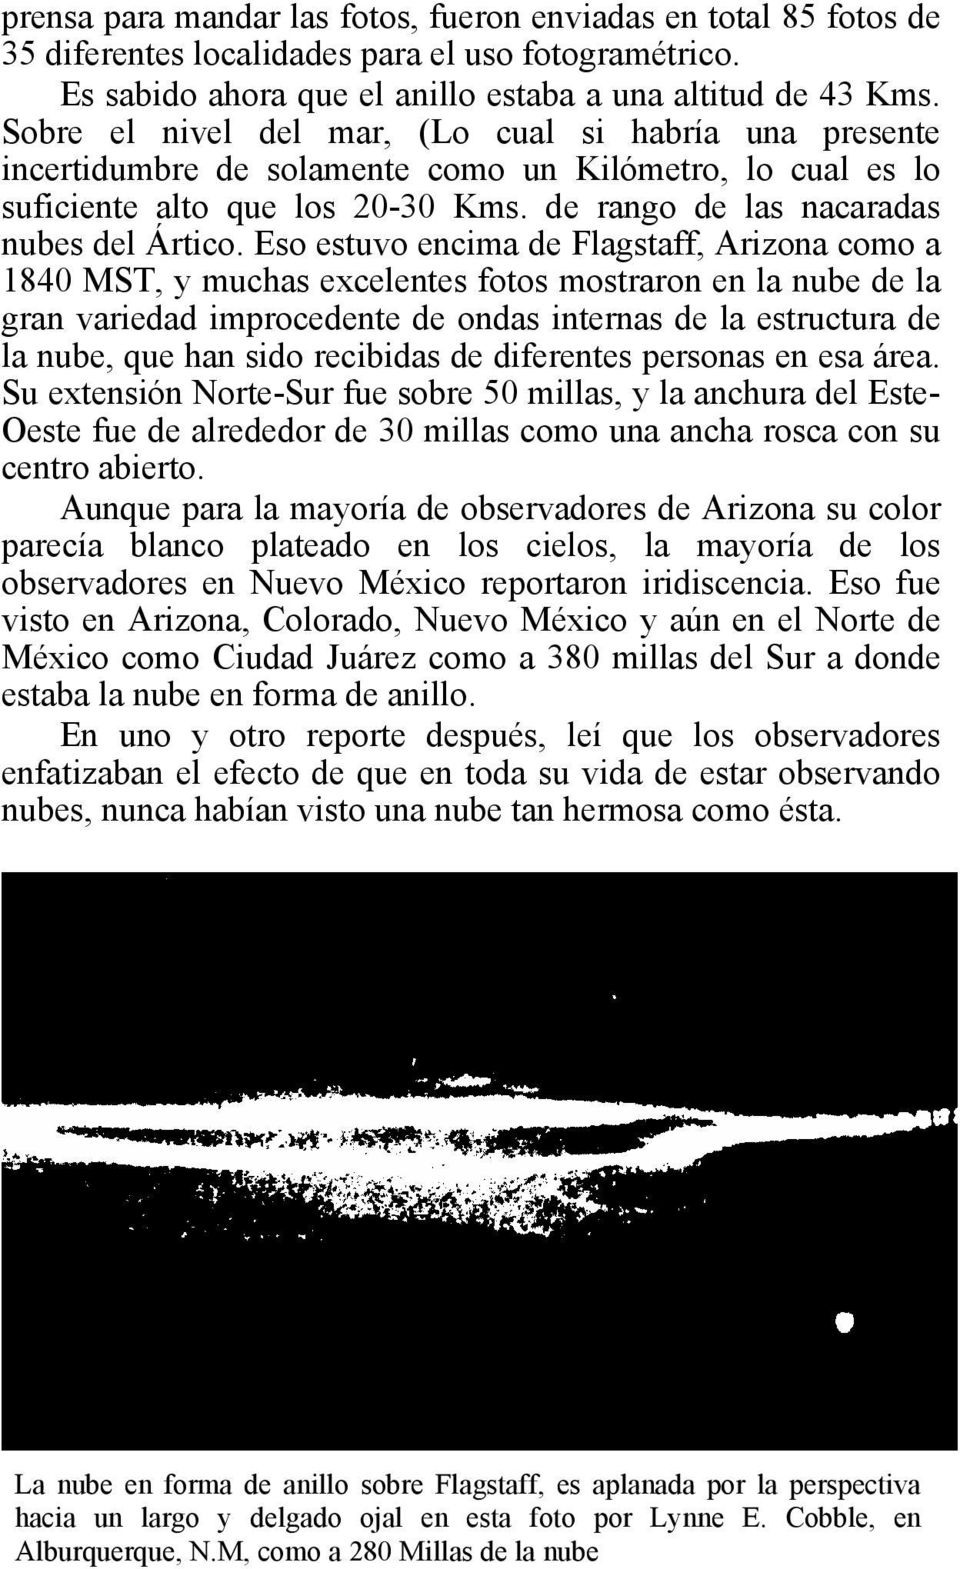 Eso estuvo encima de Flagstaff, Arizona como a 1840 MST, y muchas excelentes fotos mostraron en la nube de la gran variedad improcedente de ondas internas de la estructura de la nube, que han sido